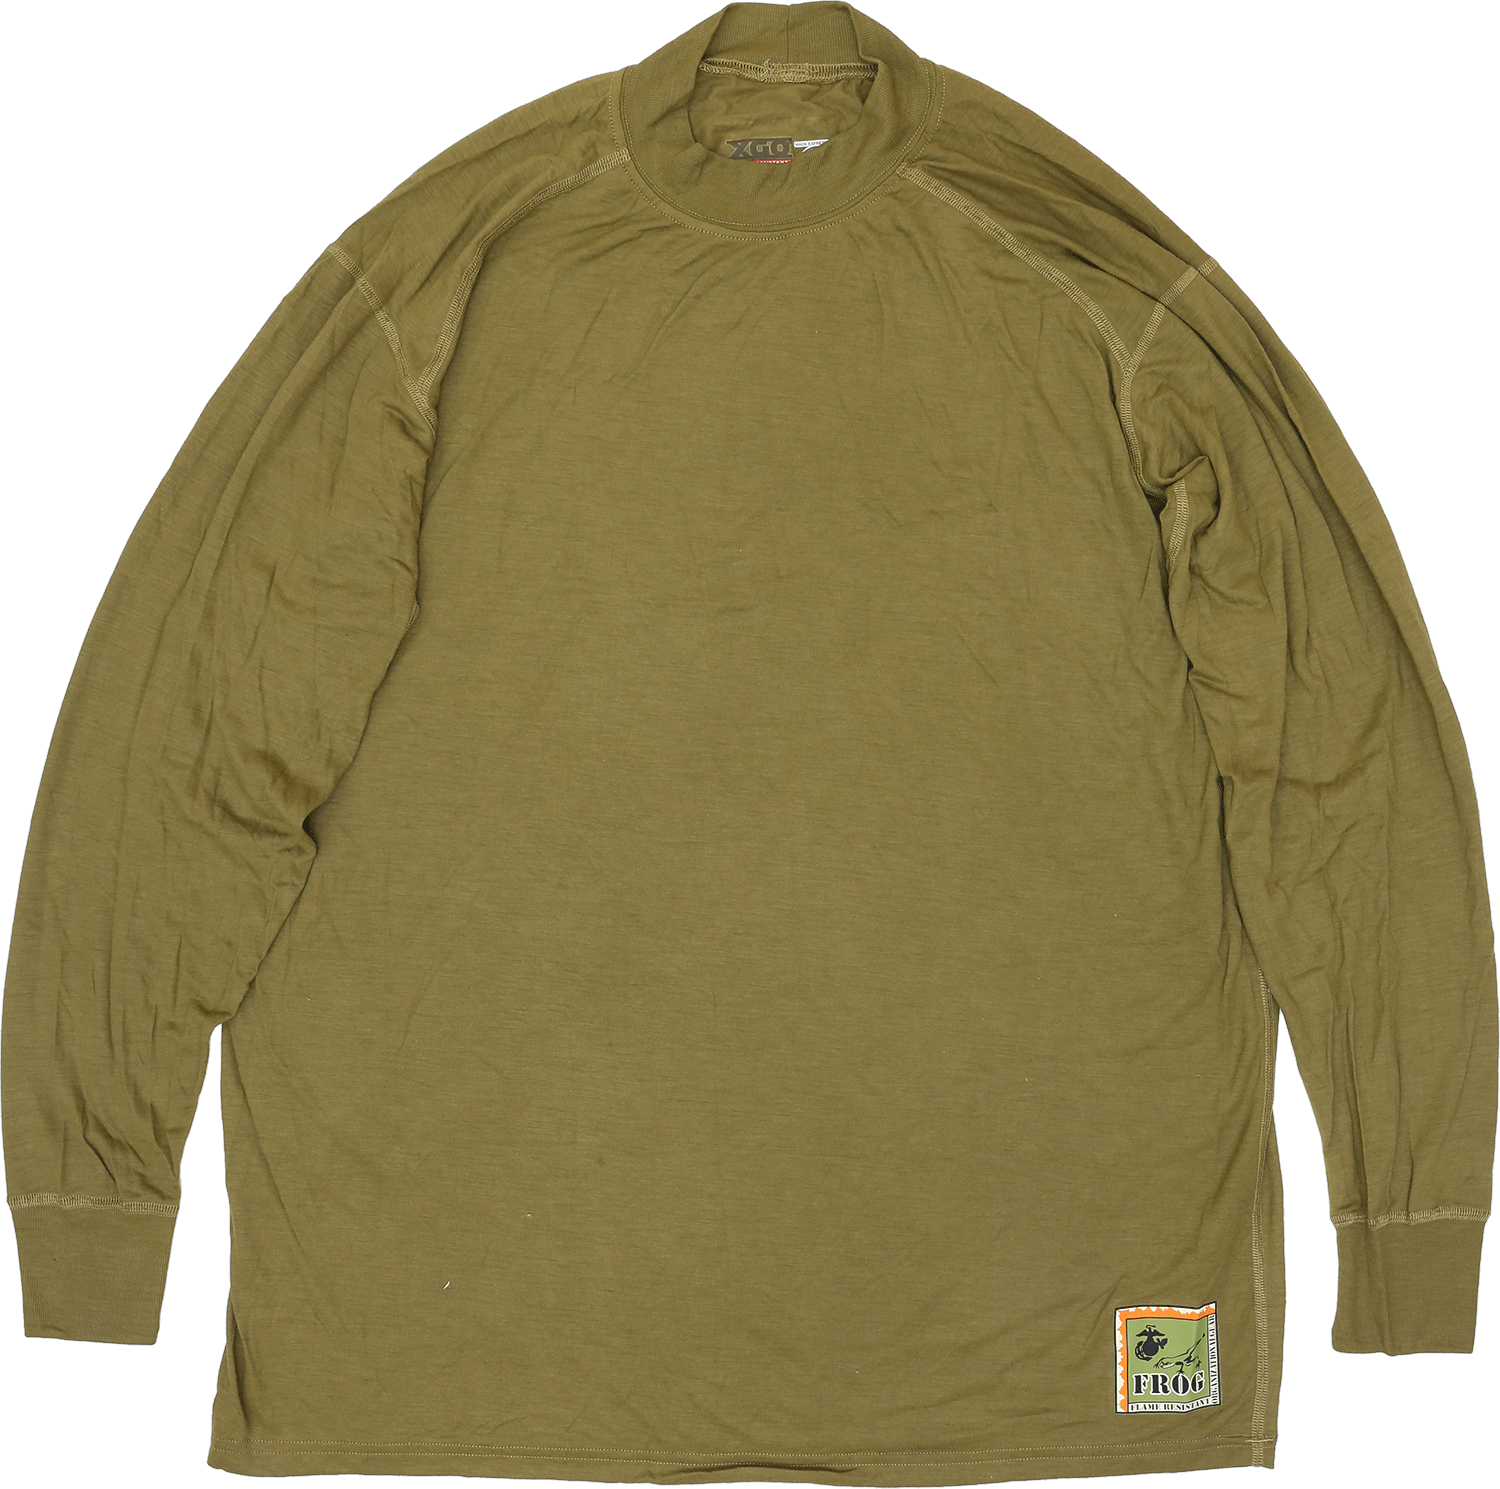 米軍実物 USMC FROG装備 SILK TOP SHIRTS 
ロングスリーブシャツ